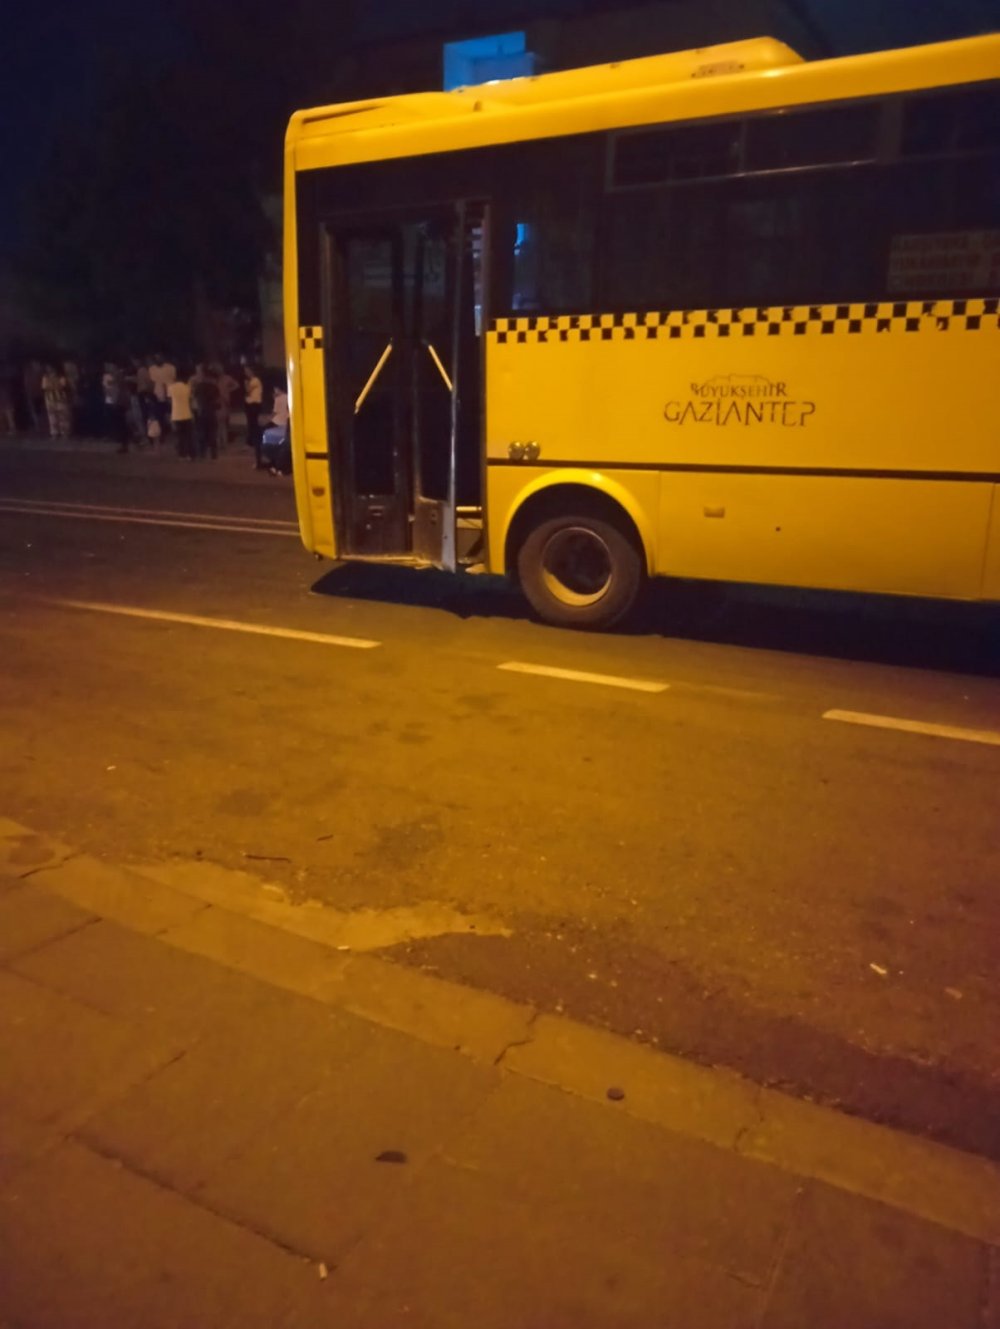 Gaziantep'te motosiklet sürücüsü halk otobüsüne çarptı: 1 ölü, 1 yaralı